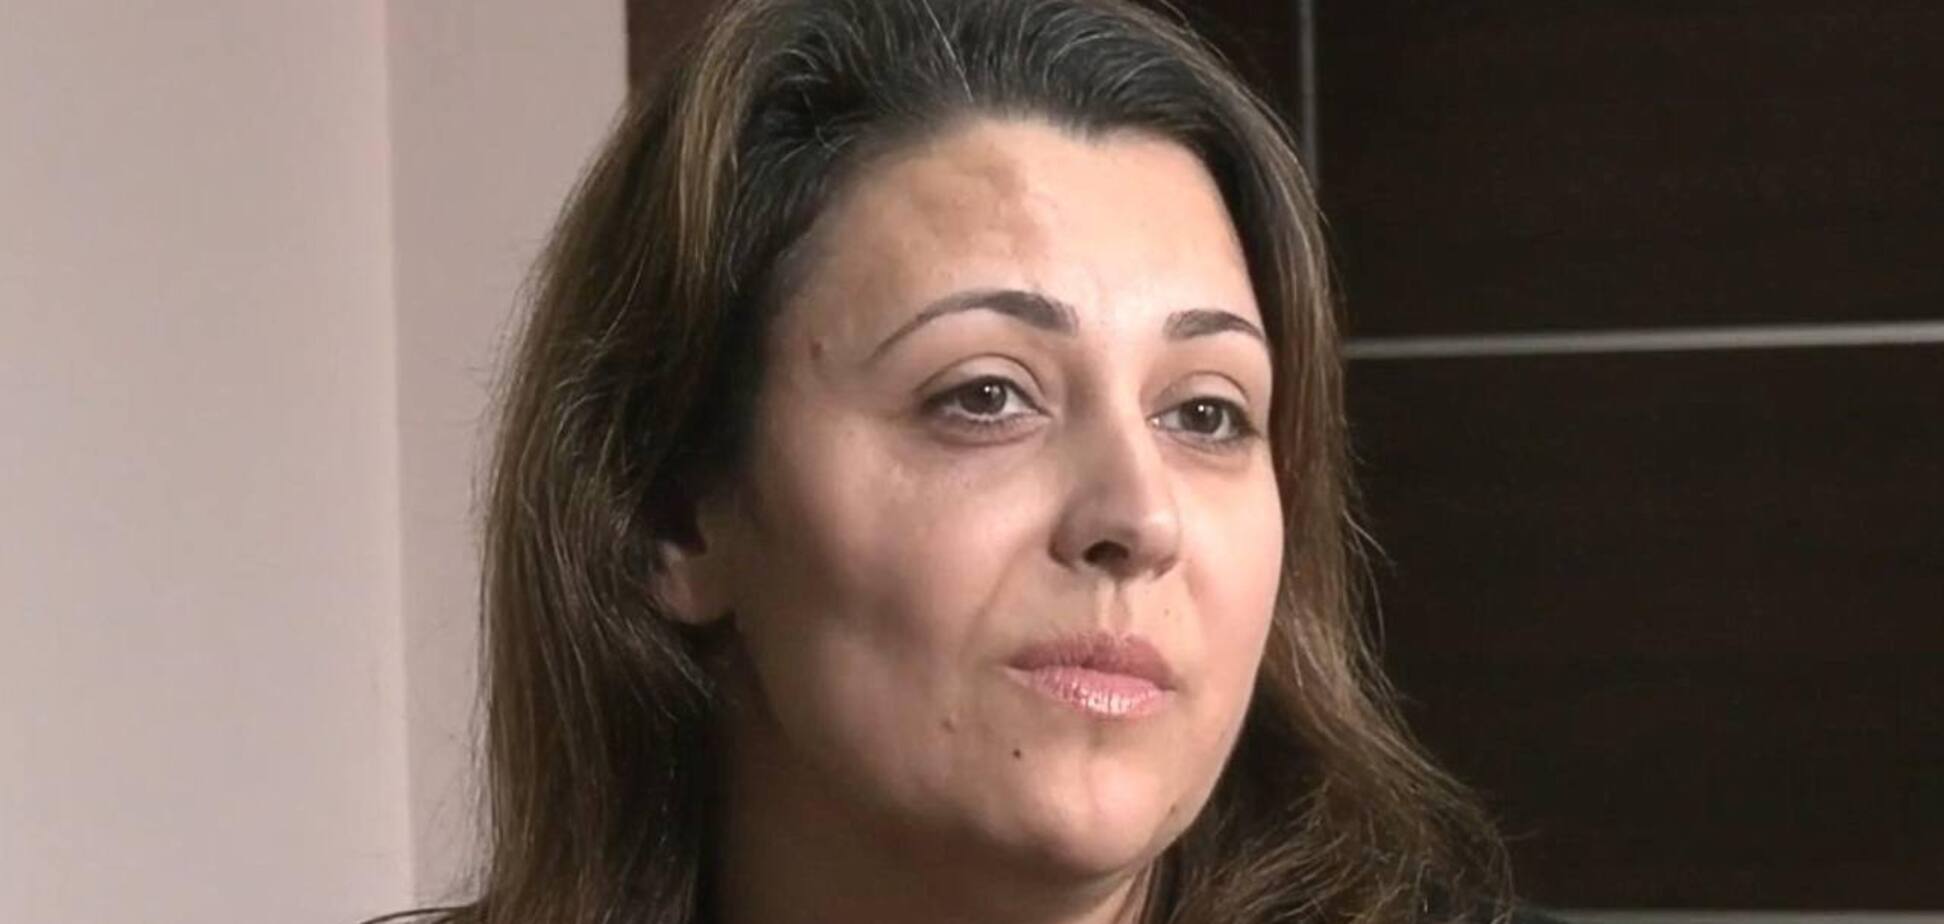 'В подвале мой ребенок потерял зрение на 50%': жительница Волновахи доверила свою историю Музею 'Голоса Мирных' Фонда Рината Ахметова